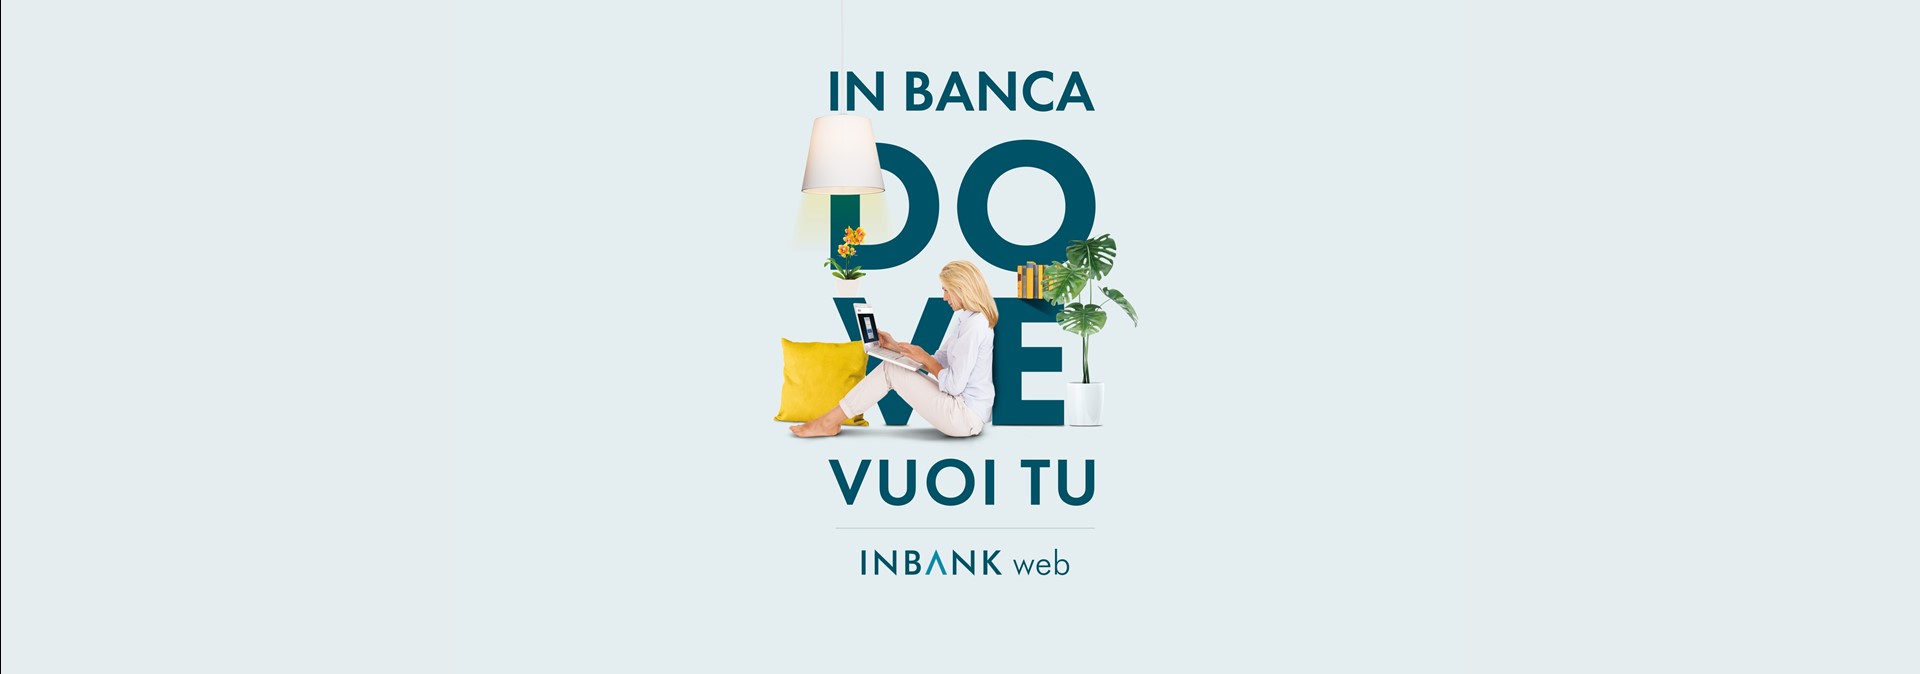 inbank web.jpg